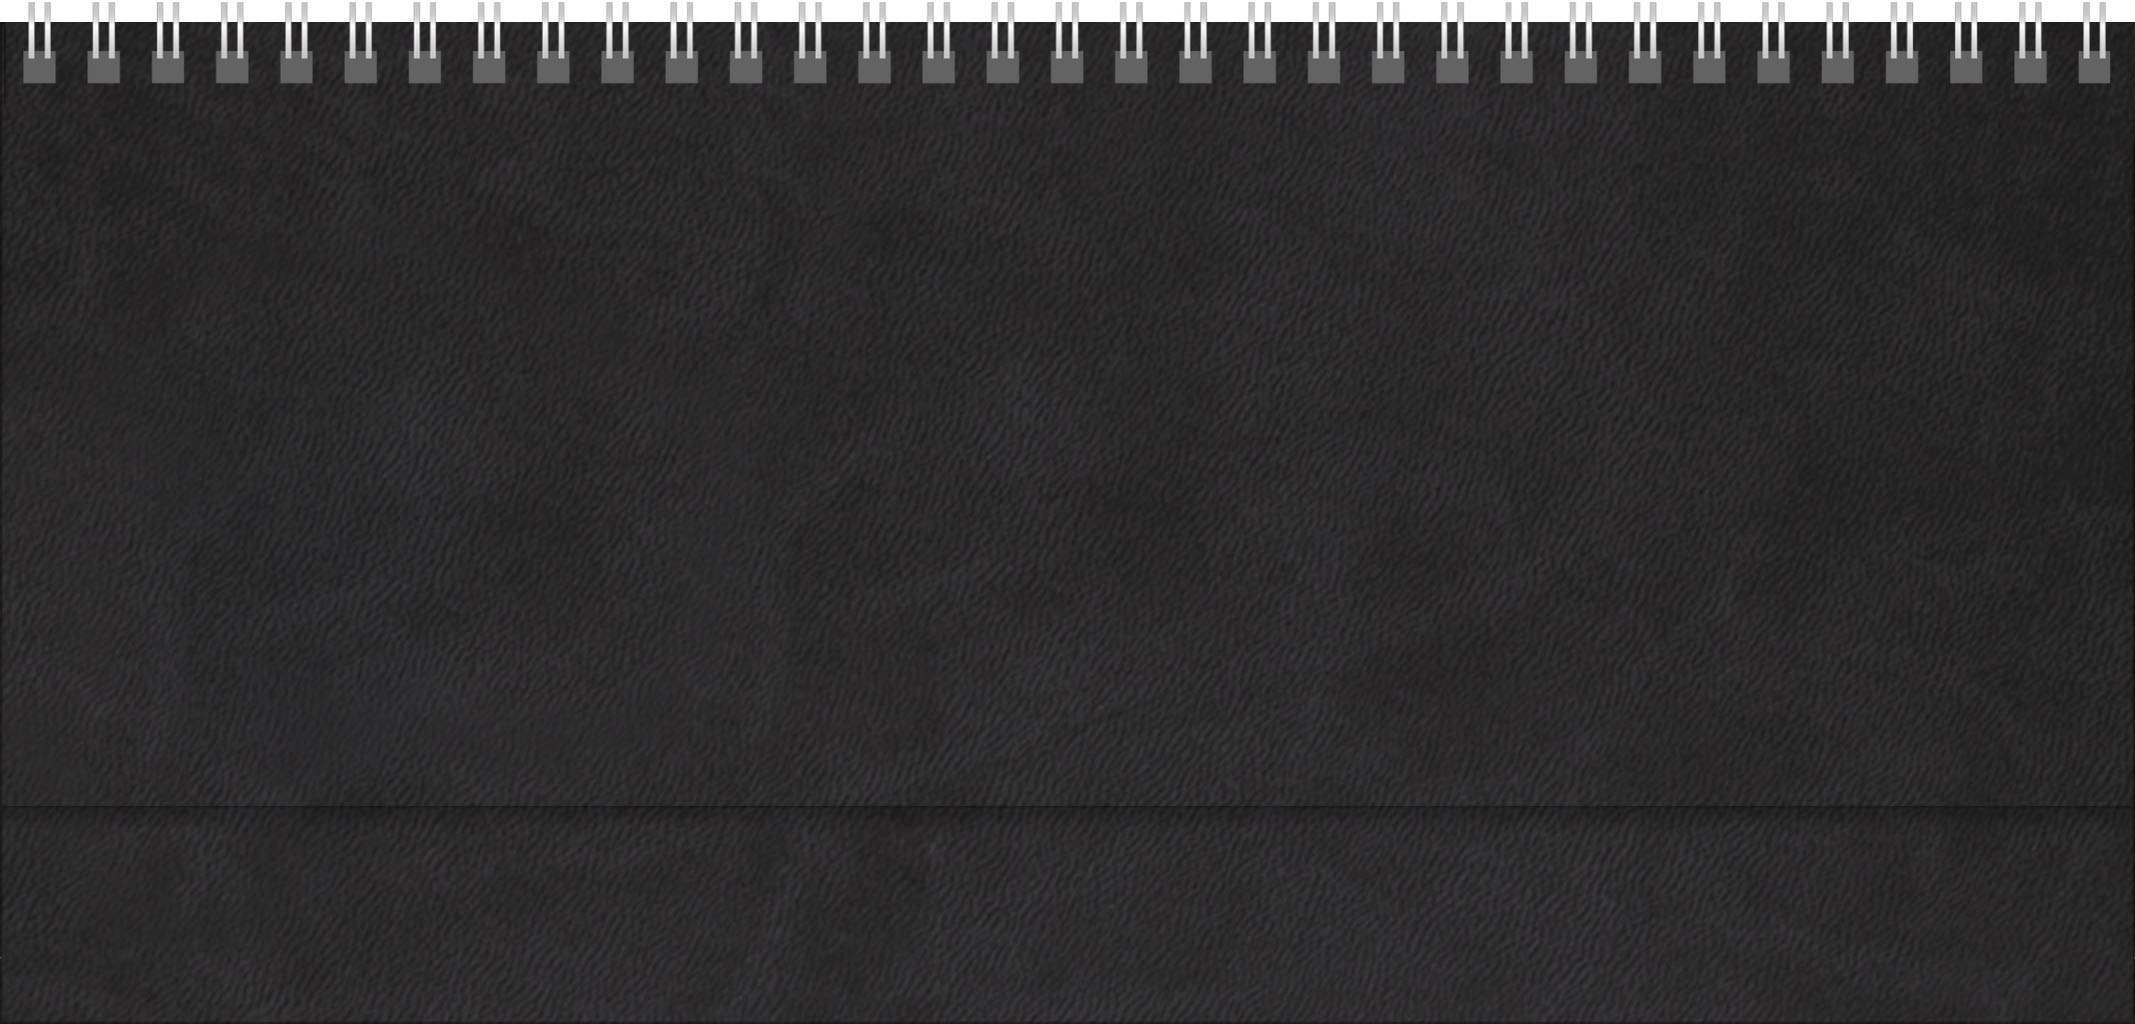 Tischquerkalender Amrum
Soft-Touch schwarz
1 Woche / 2 Seiten
Deutsch grau
mit Register